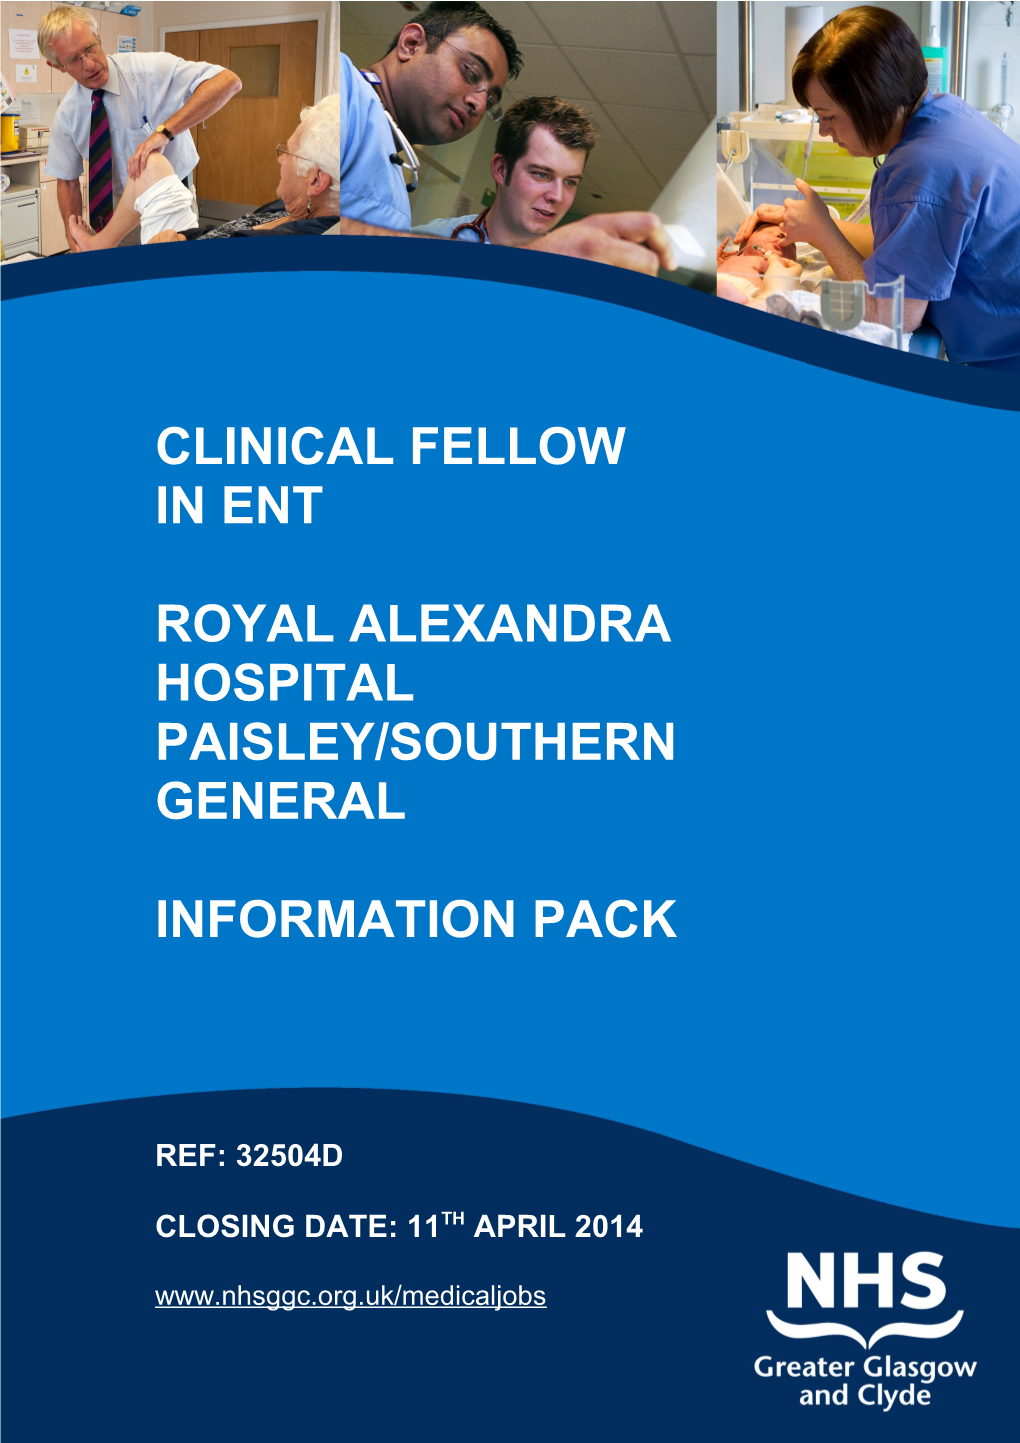 Royal Alexandra Hospital Paisley/Southern General